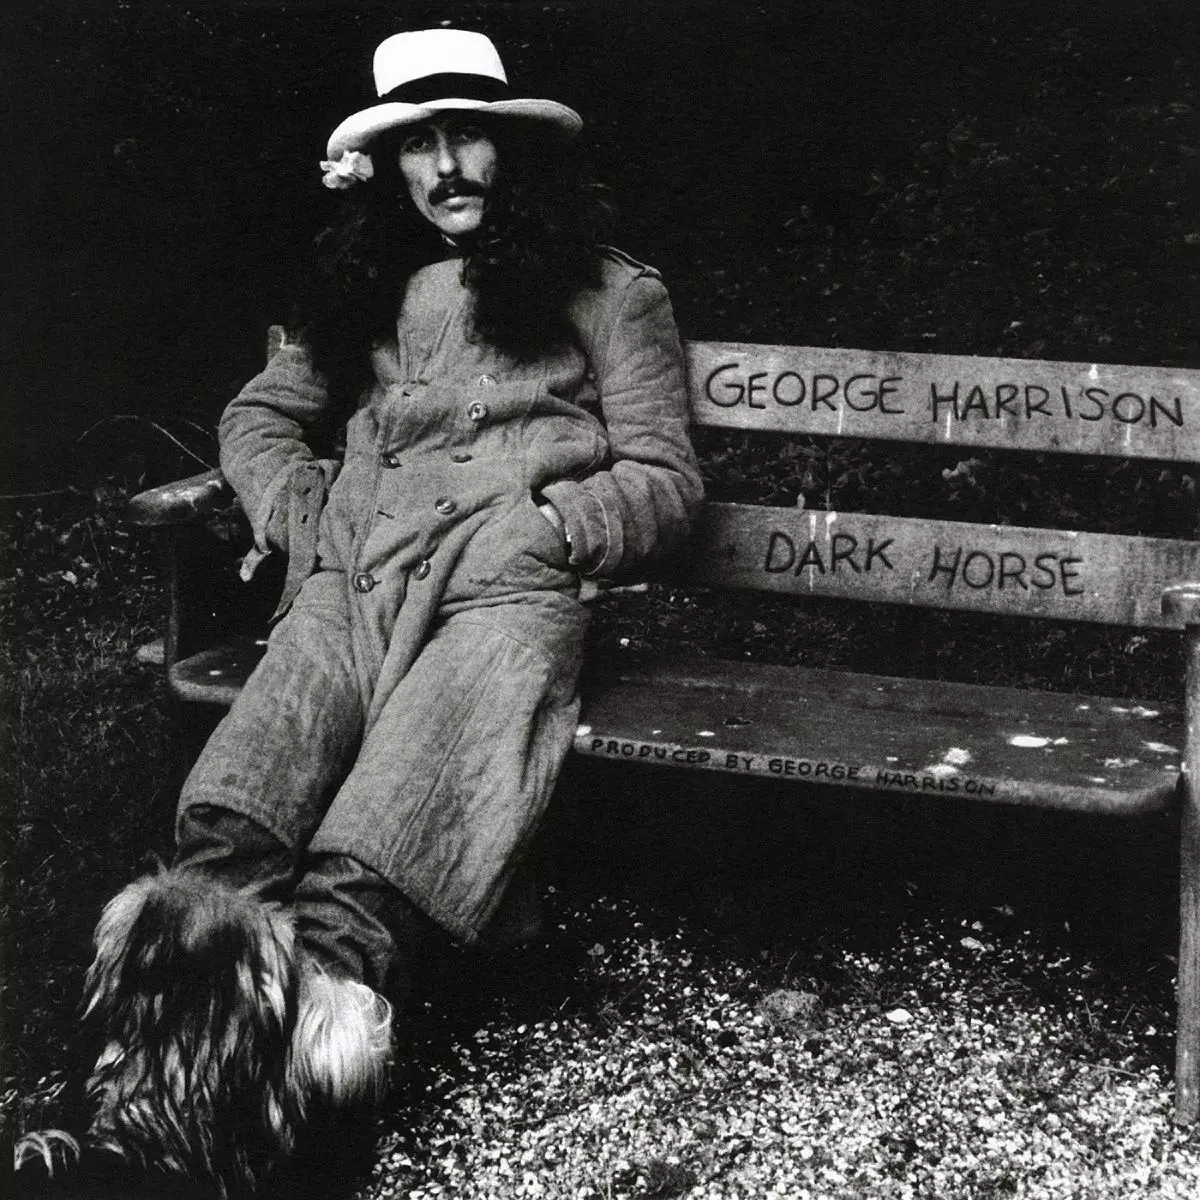 डार्क हॉर्स (1 9 74) - जॉर्ज हैरिसन - एल्बम के बारे में सब कुछ ... 12549_4